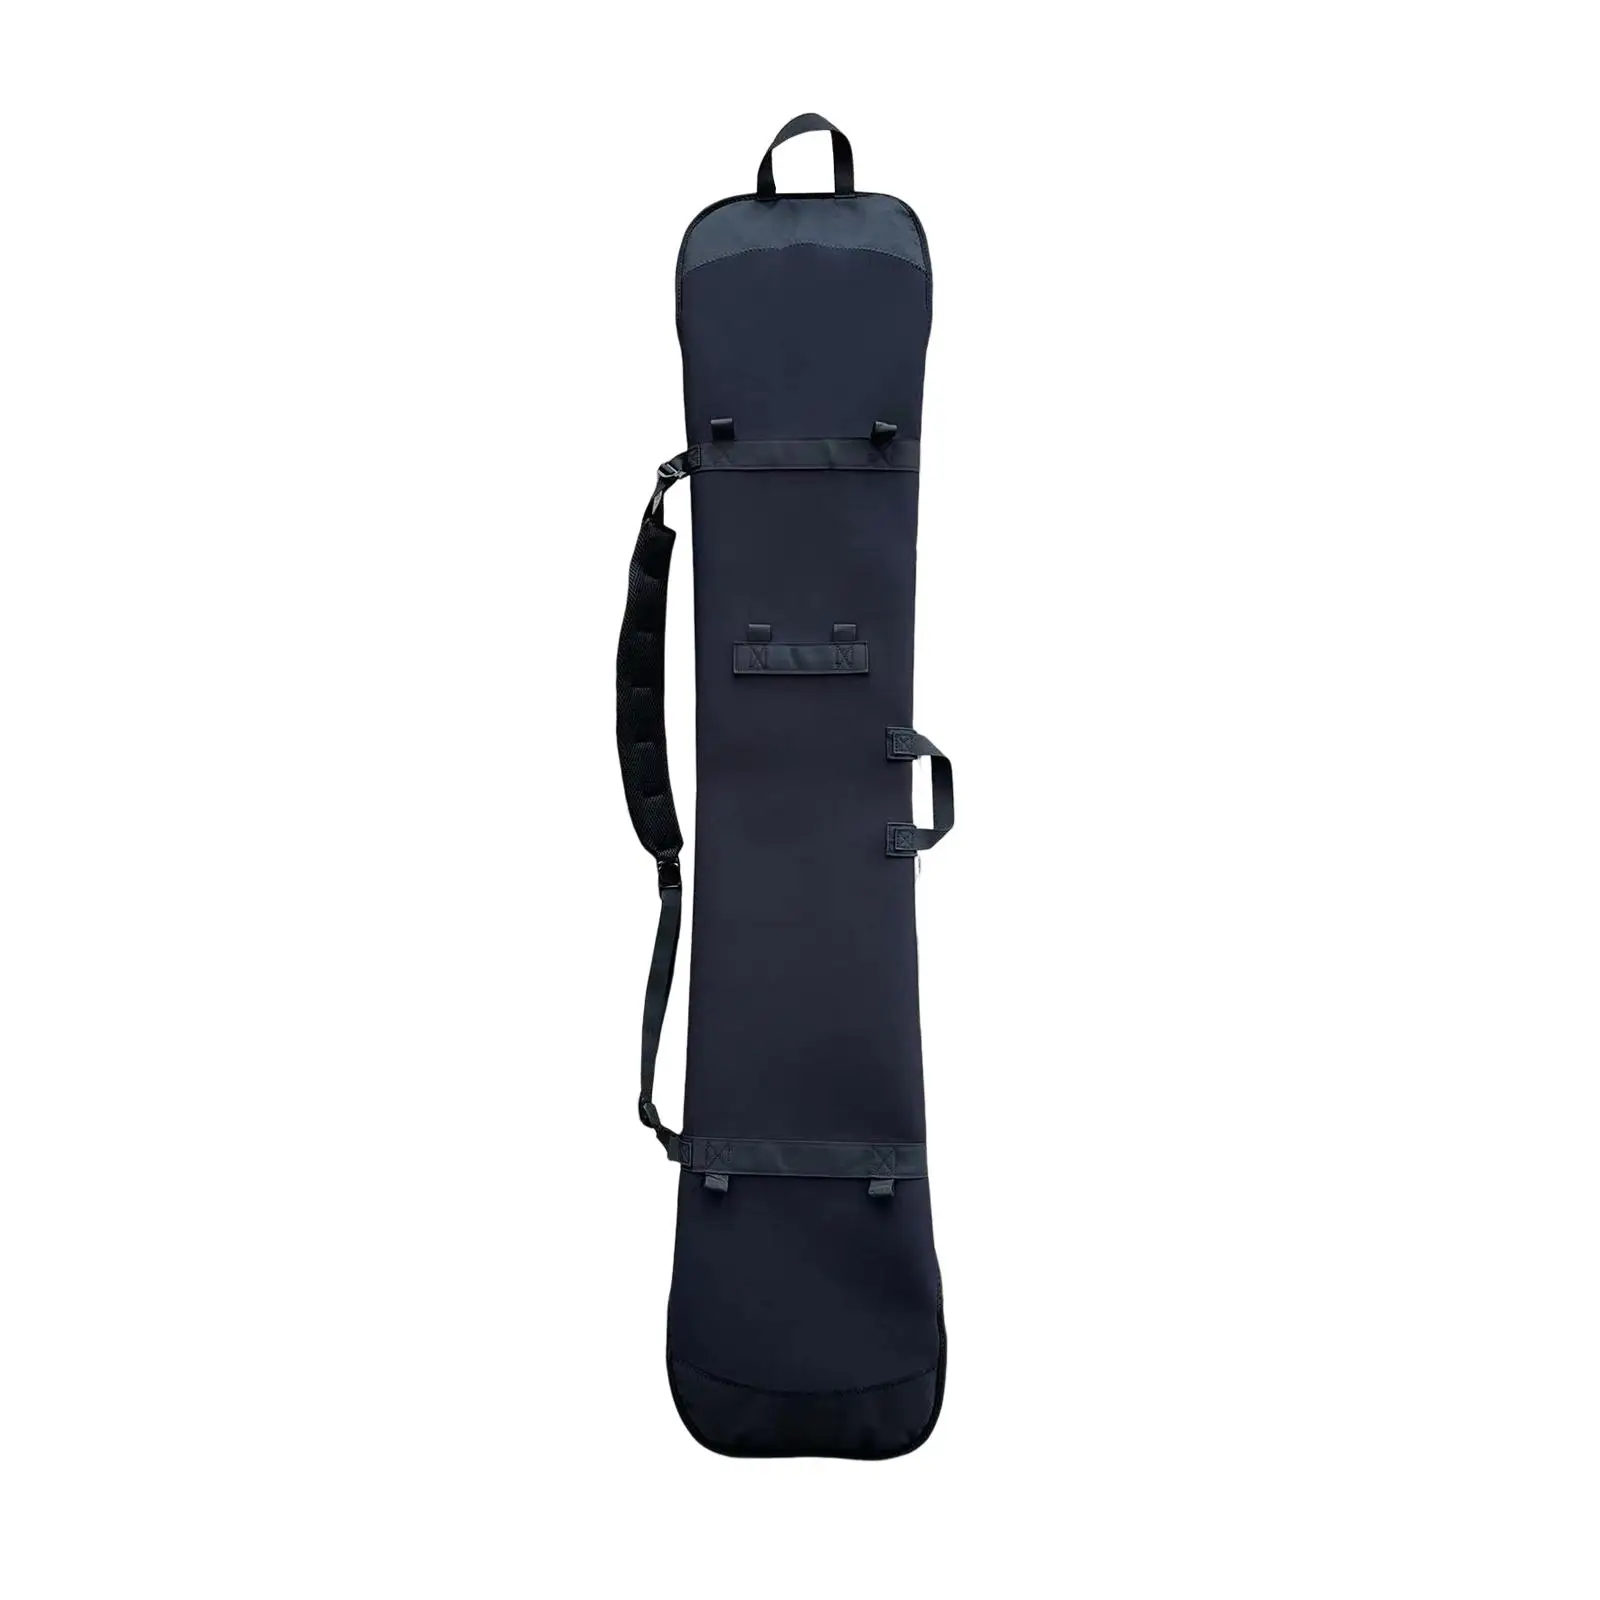 Ski Snowboard Bag Shoulder Straps Protection Carry Case Waterproof Adjustable